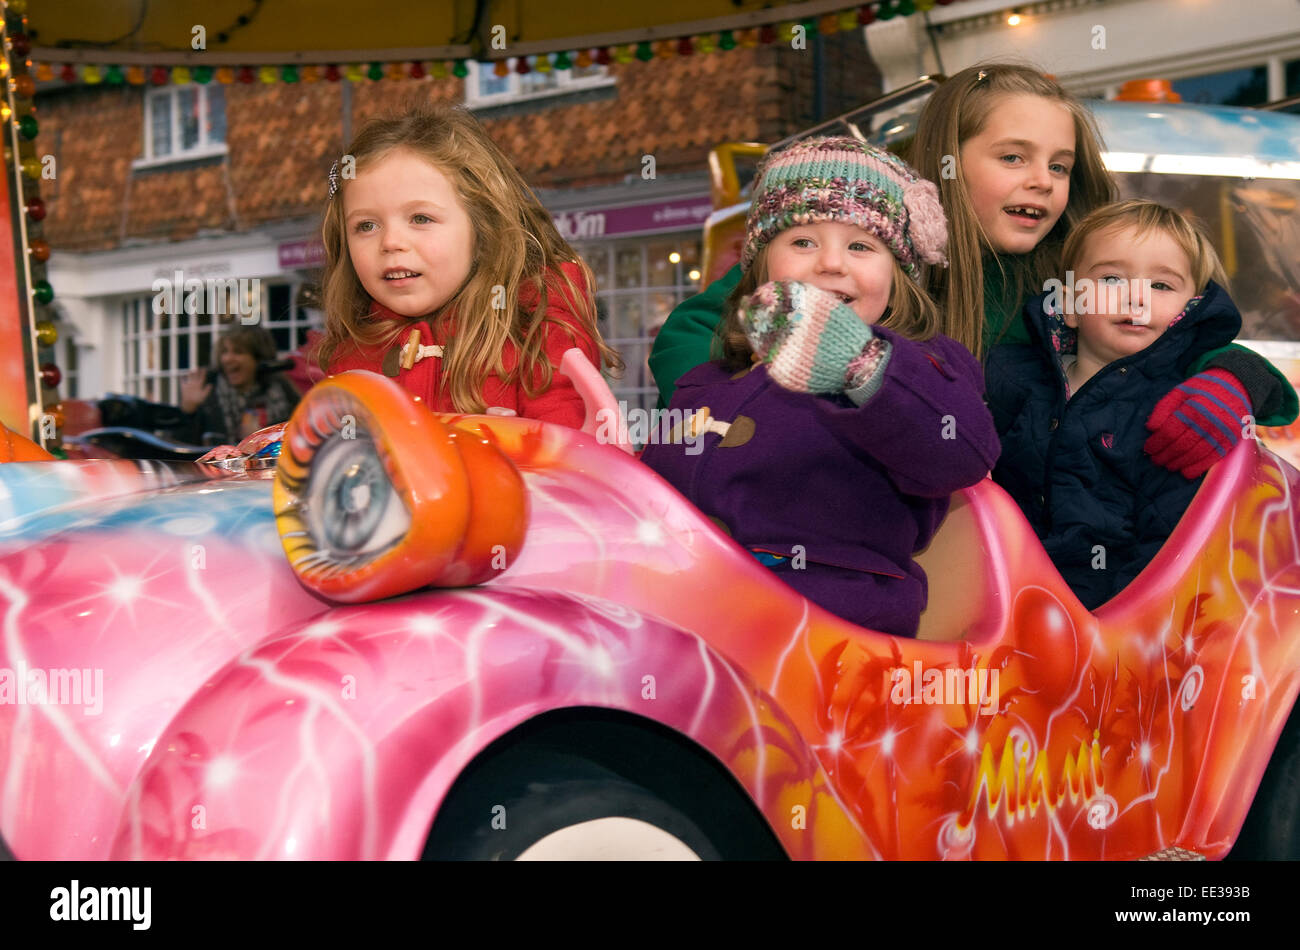 Groupe de 4 enfants s'amusant sur un champ de foire ride at an outdoor marché de noël, high street, Haslemere, Surrey, UK 20 décembre. Banque D'Images